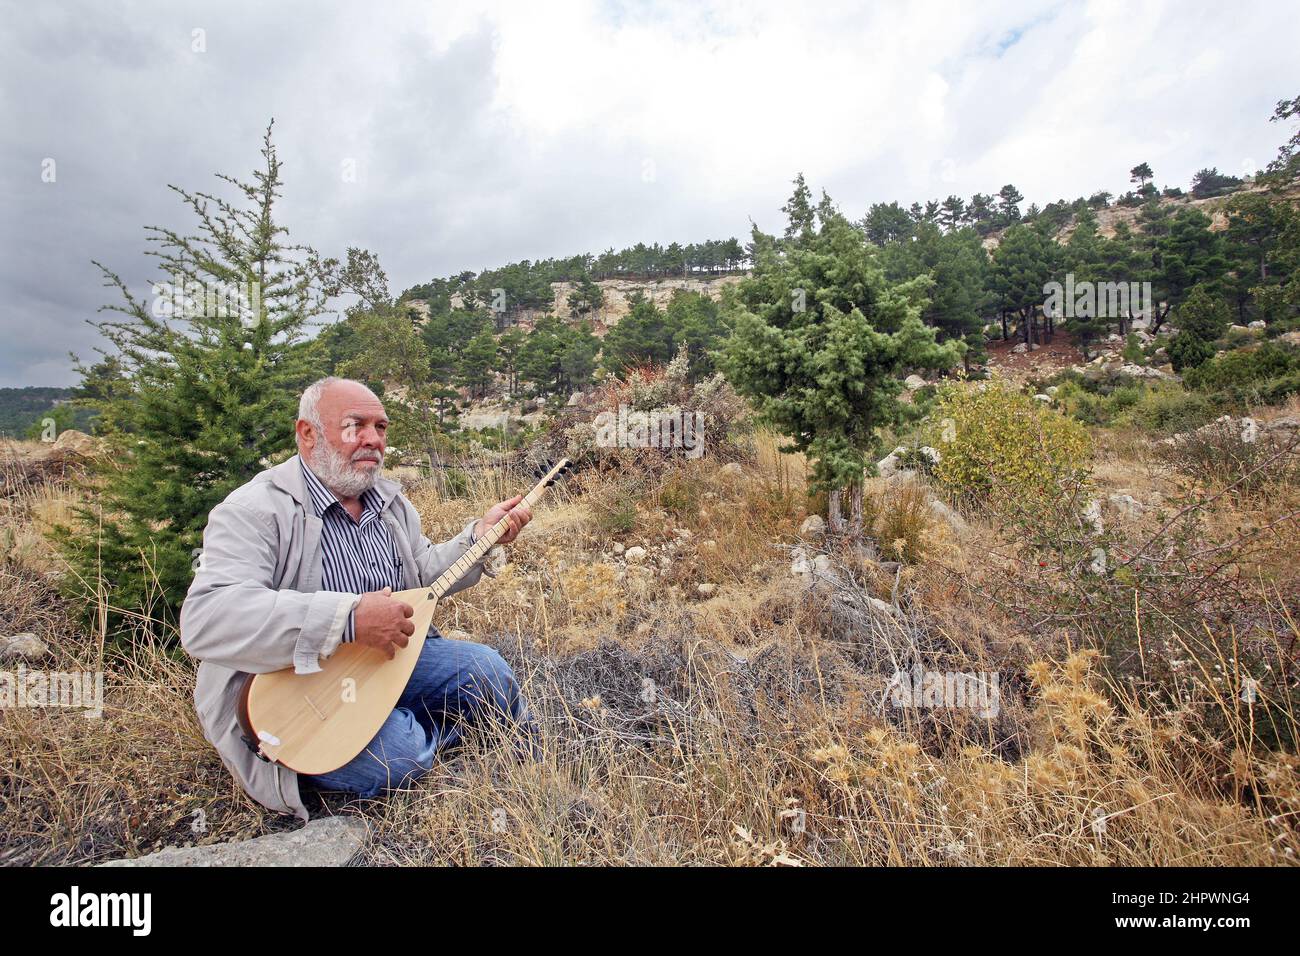 MERSIN, TURCHIA - OTTOBRE 15: Famoso musicista folk turco e strumento turco baglama virtuoso Musa Eroglu ritratto il 15 ottobre 2009 a Mersin, Turchia. Foto Stock